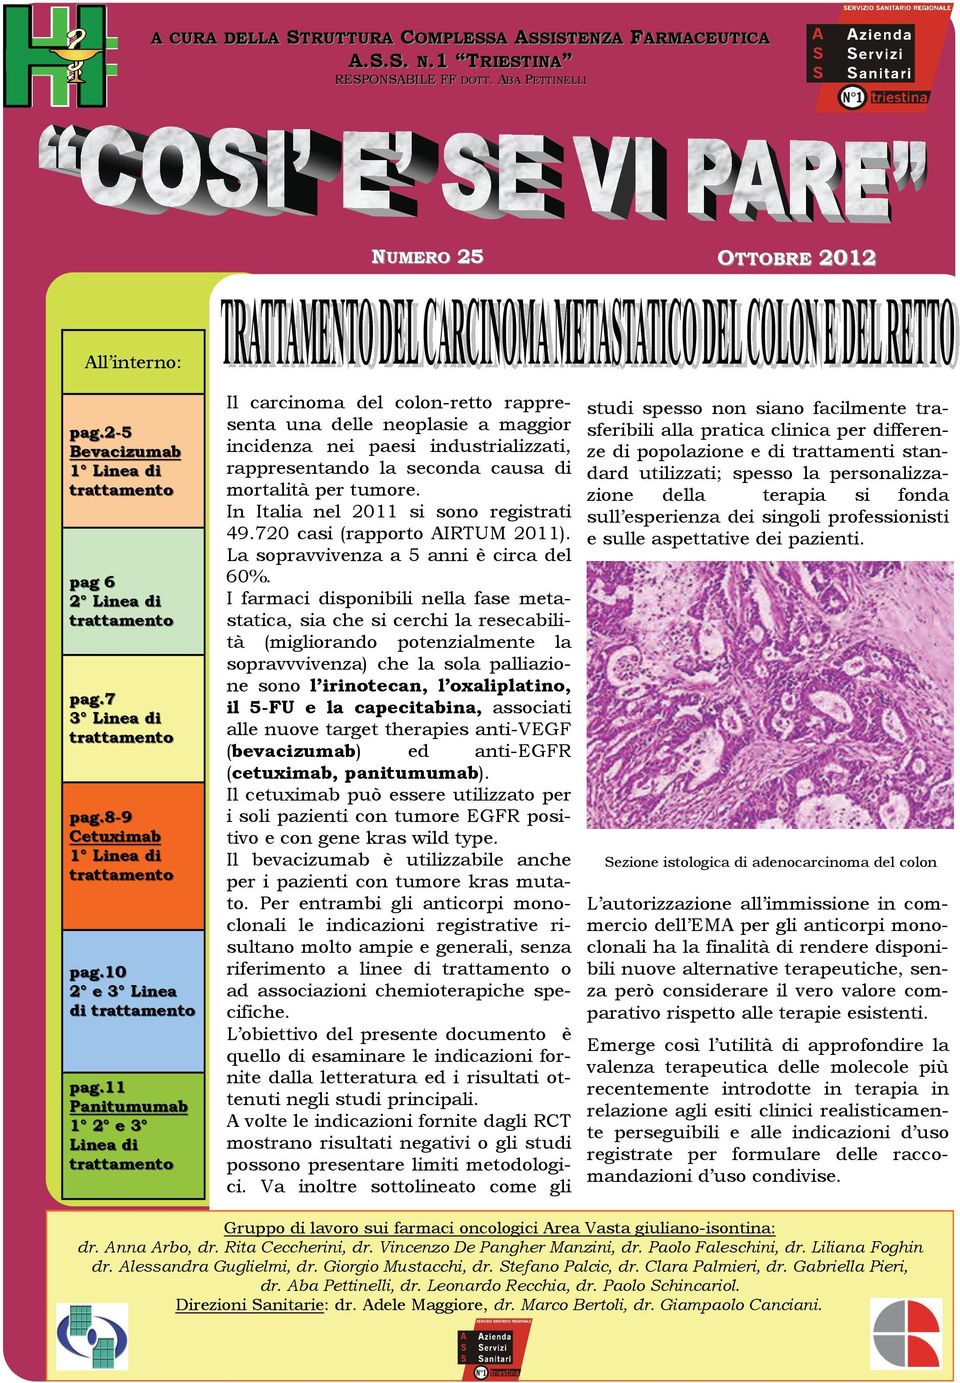 11 Panitumumab 1 2 e 3 Linea di trattamento Il carcinoma del colon-retto rappresenta una delle neoplasie a maggior incidenza nei paesi industrializzati, rappresentando la seconda causa di mortalità